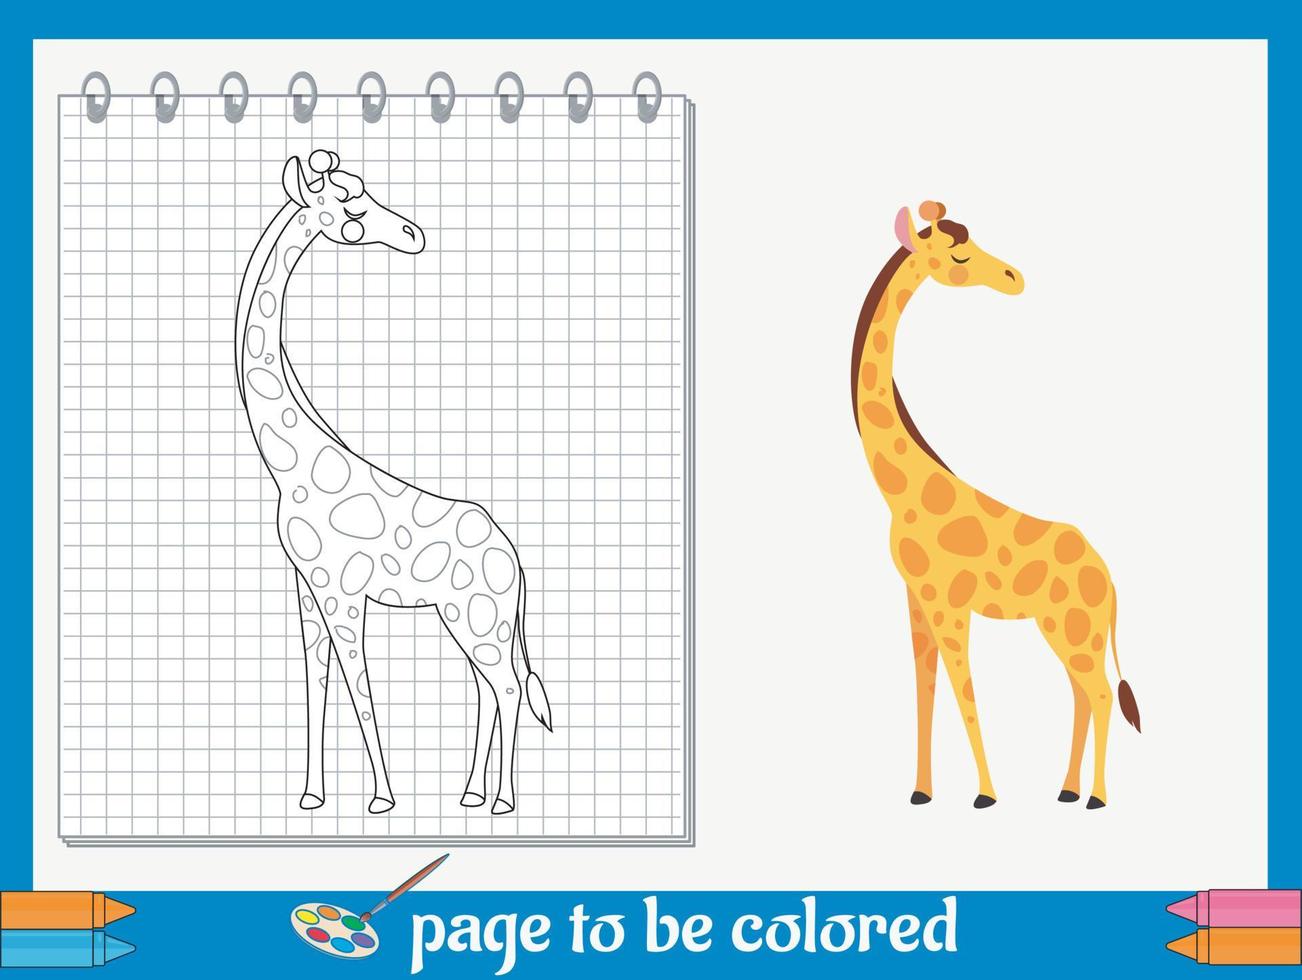 tekenfilm kleur afbeeldingen voor kinderen vector